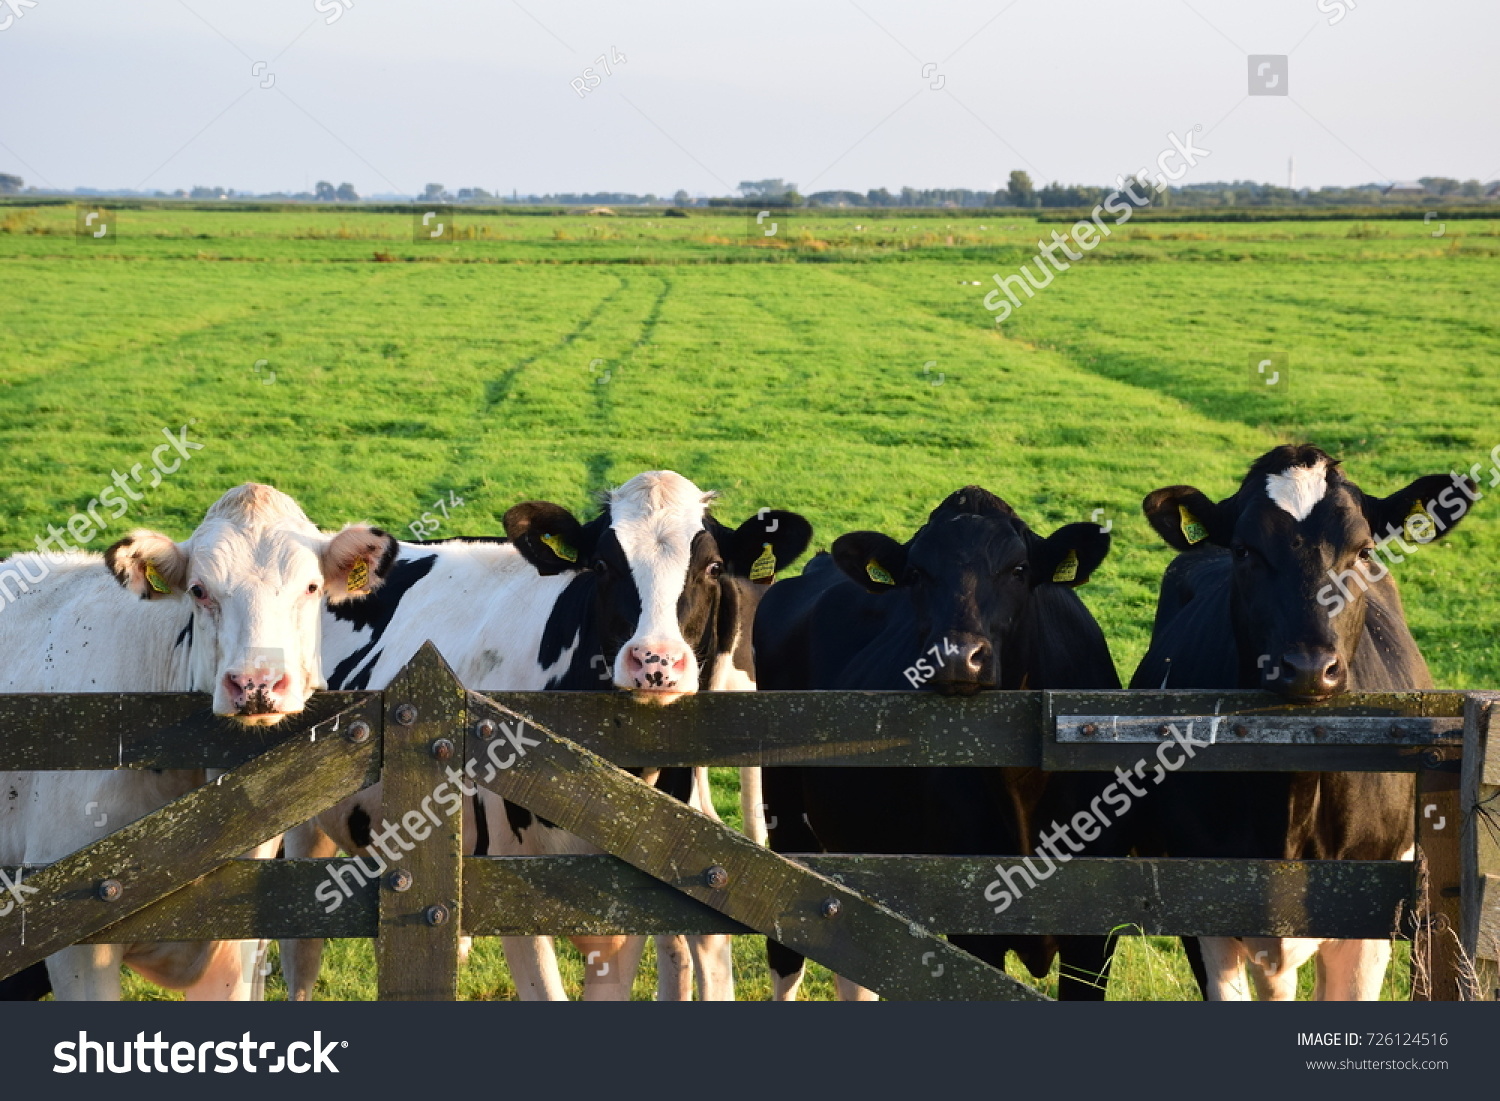 Cows on a farm #726124516